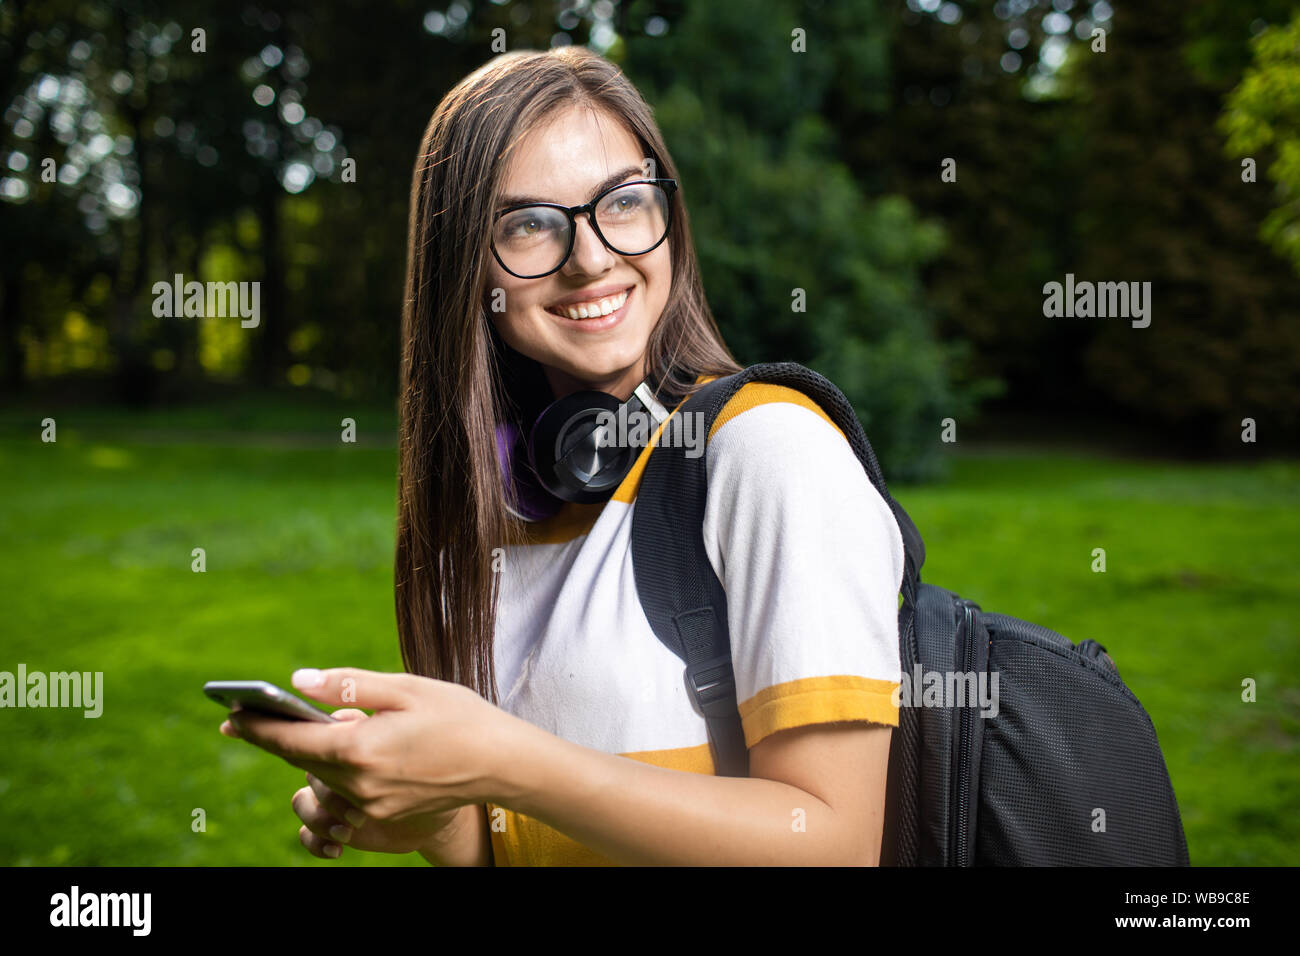 Portrait de jeune fille étudiante joyeuse agréablement surpris par le message qu'elle a obtenu via smartphone Banque D'Images